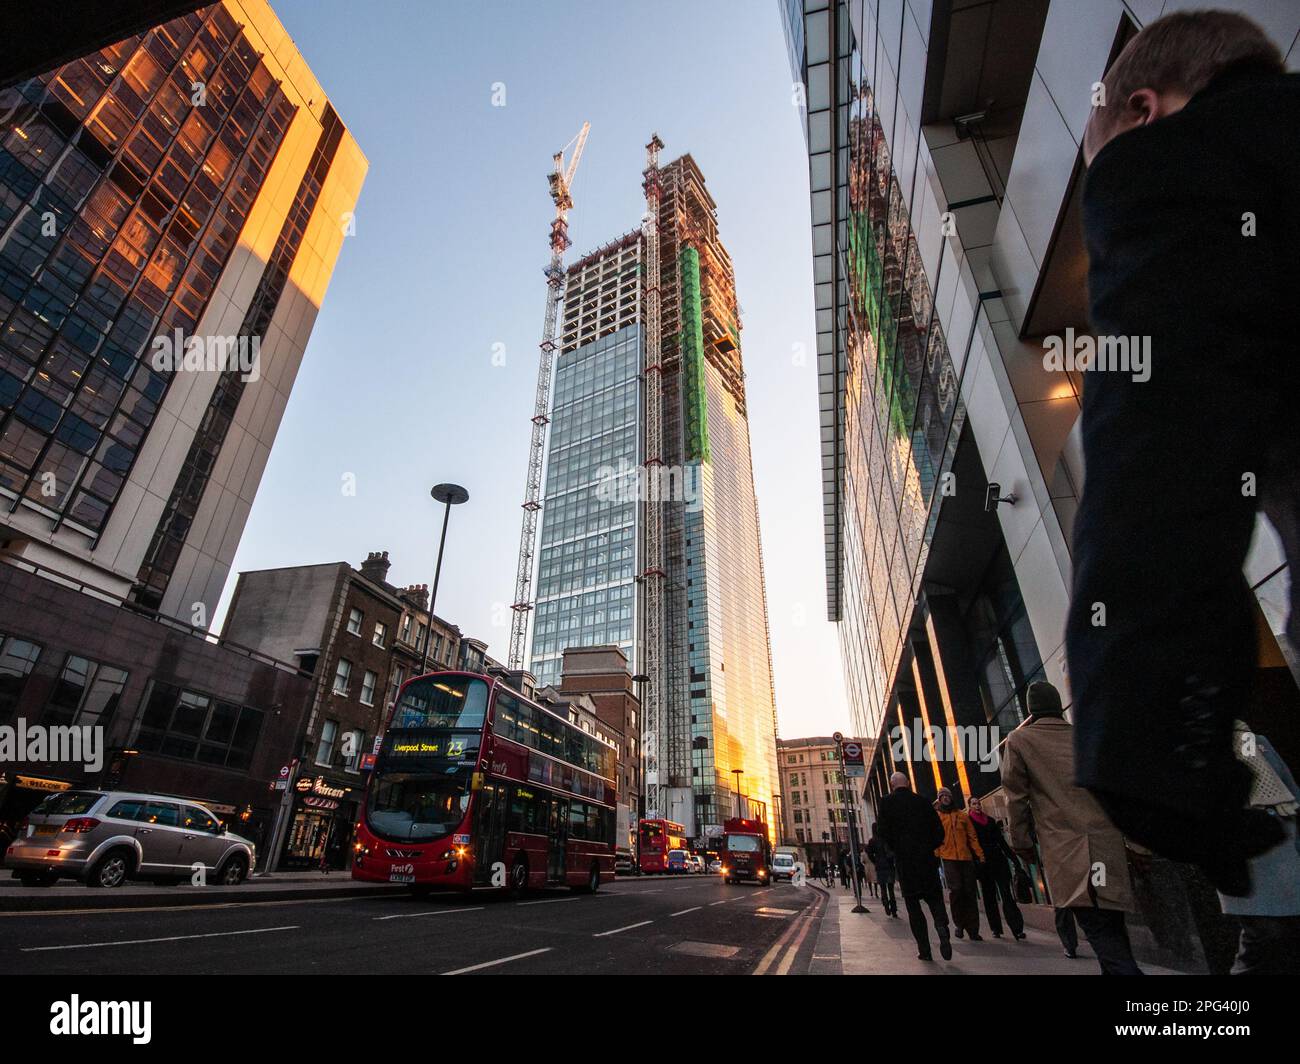 Fußgänger und Verkehr passieren den unterbauten Heron Tower Büro Wolkenkratzer im City of London Finanzviertel. Stockfoto